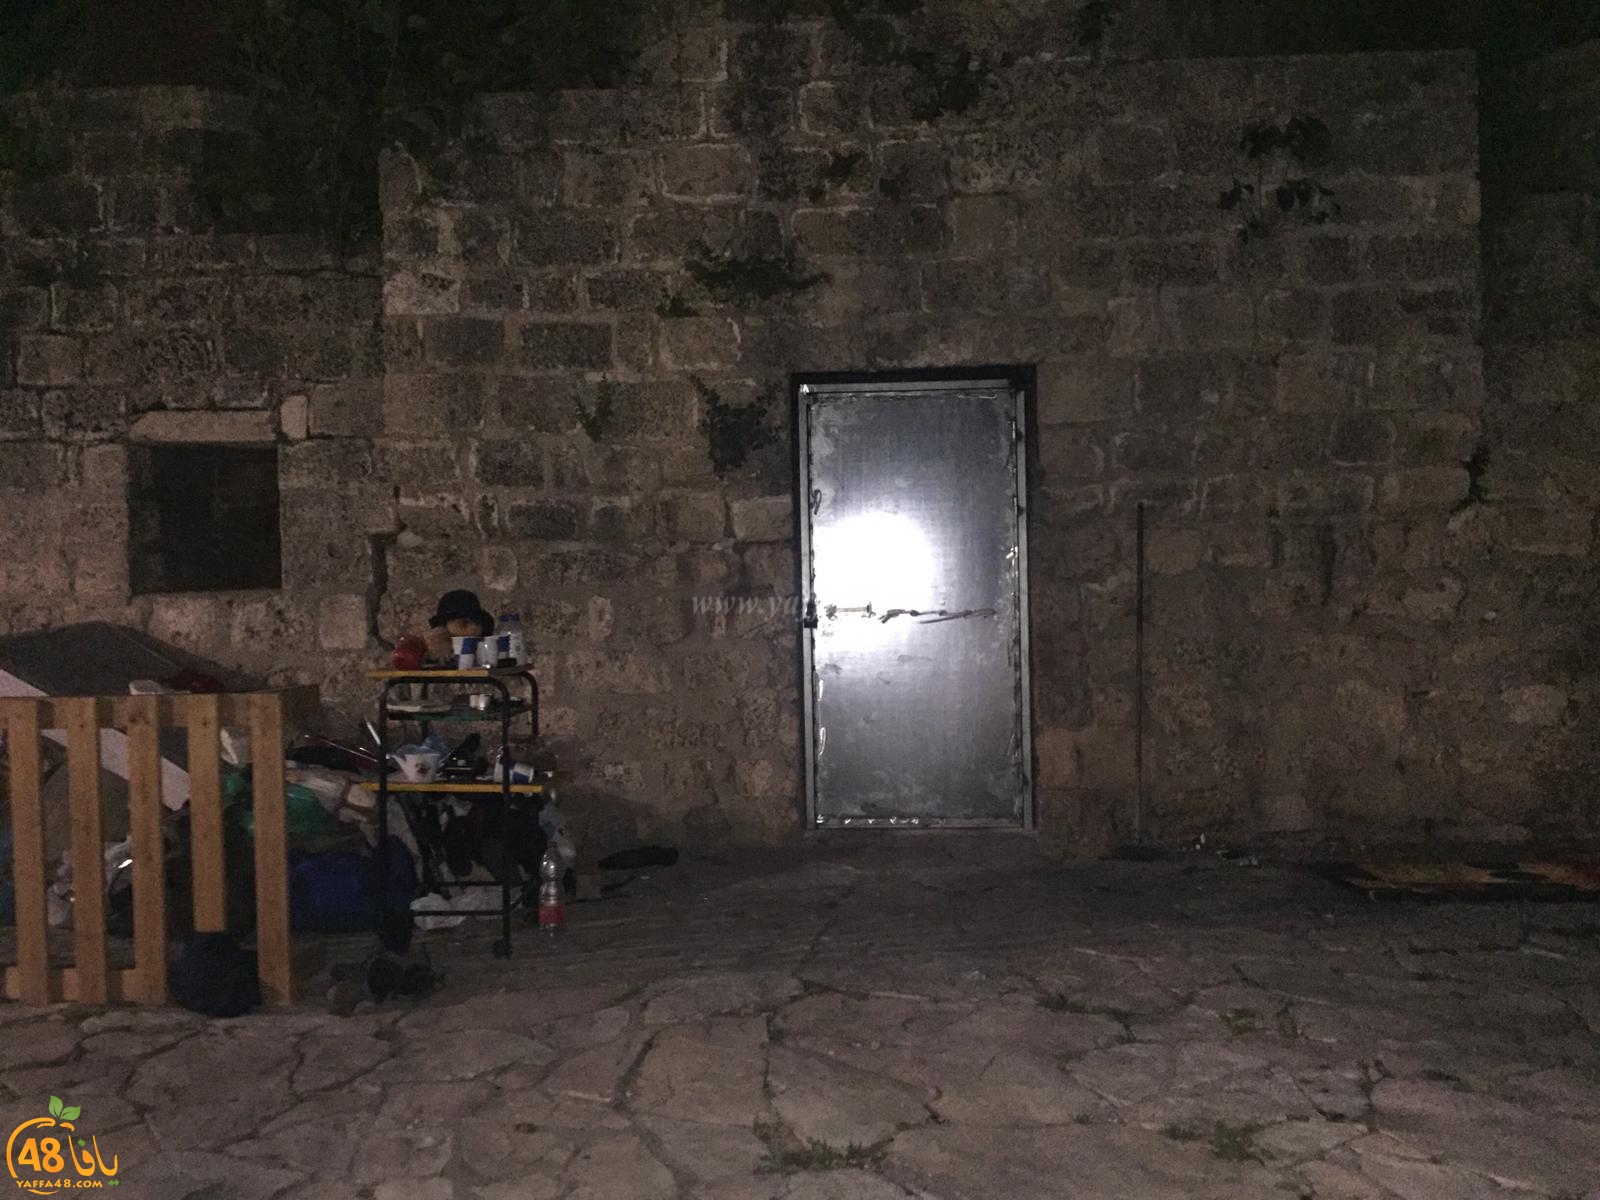  بعد النشر في يافا 48 - تنظيف واغلاق سبيل أبو نبوت في يافا بباب حديدي 